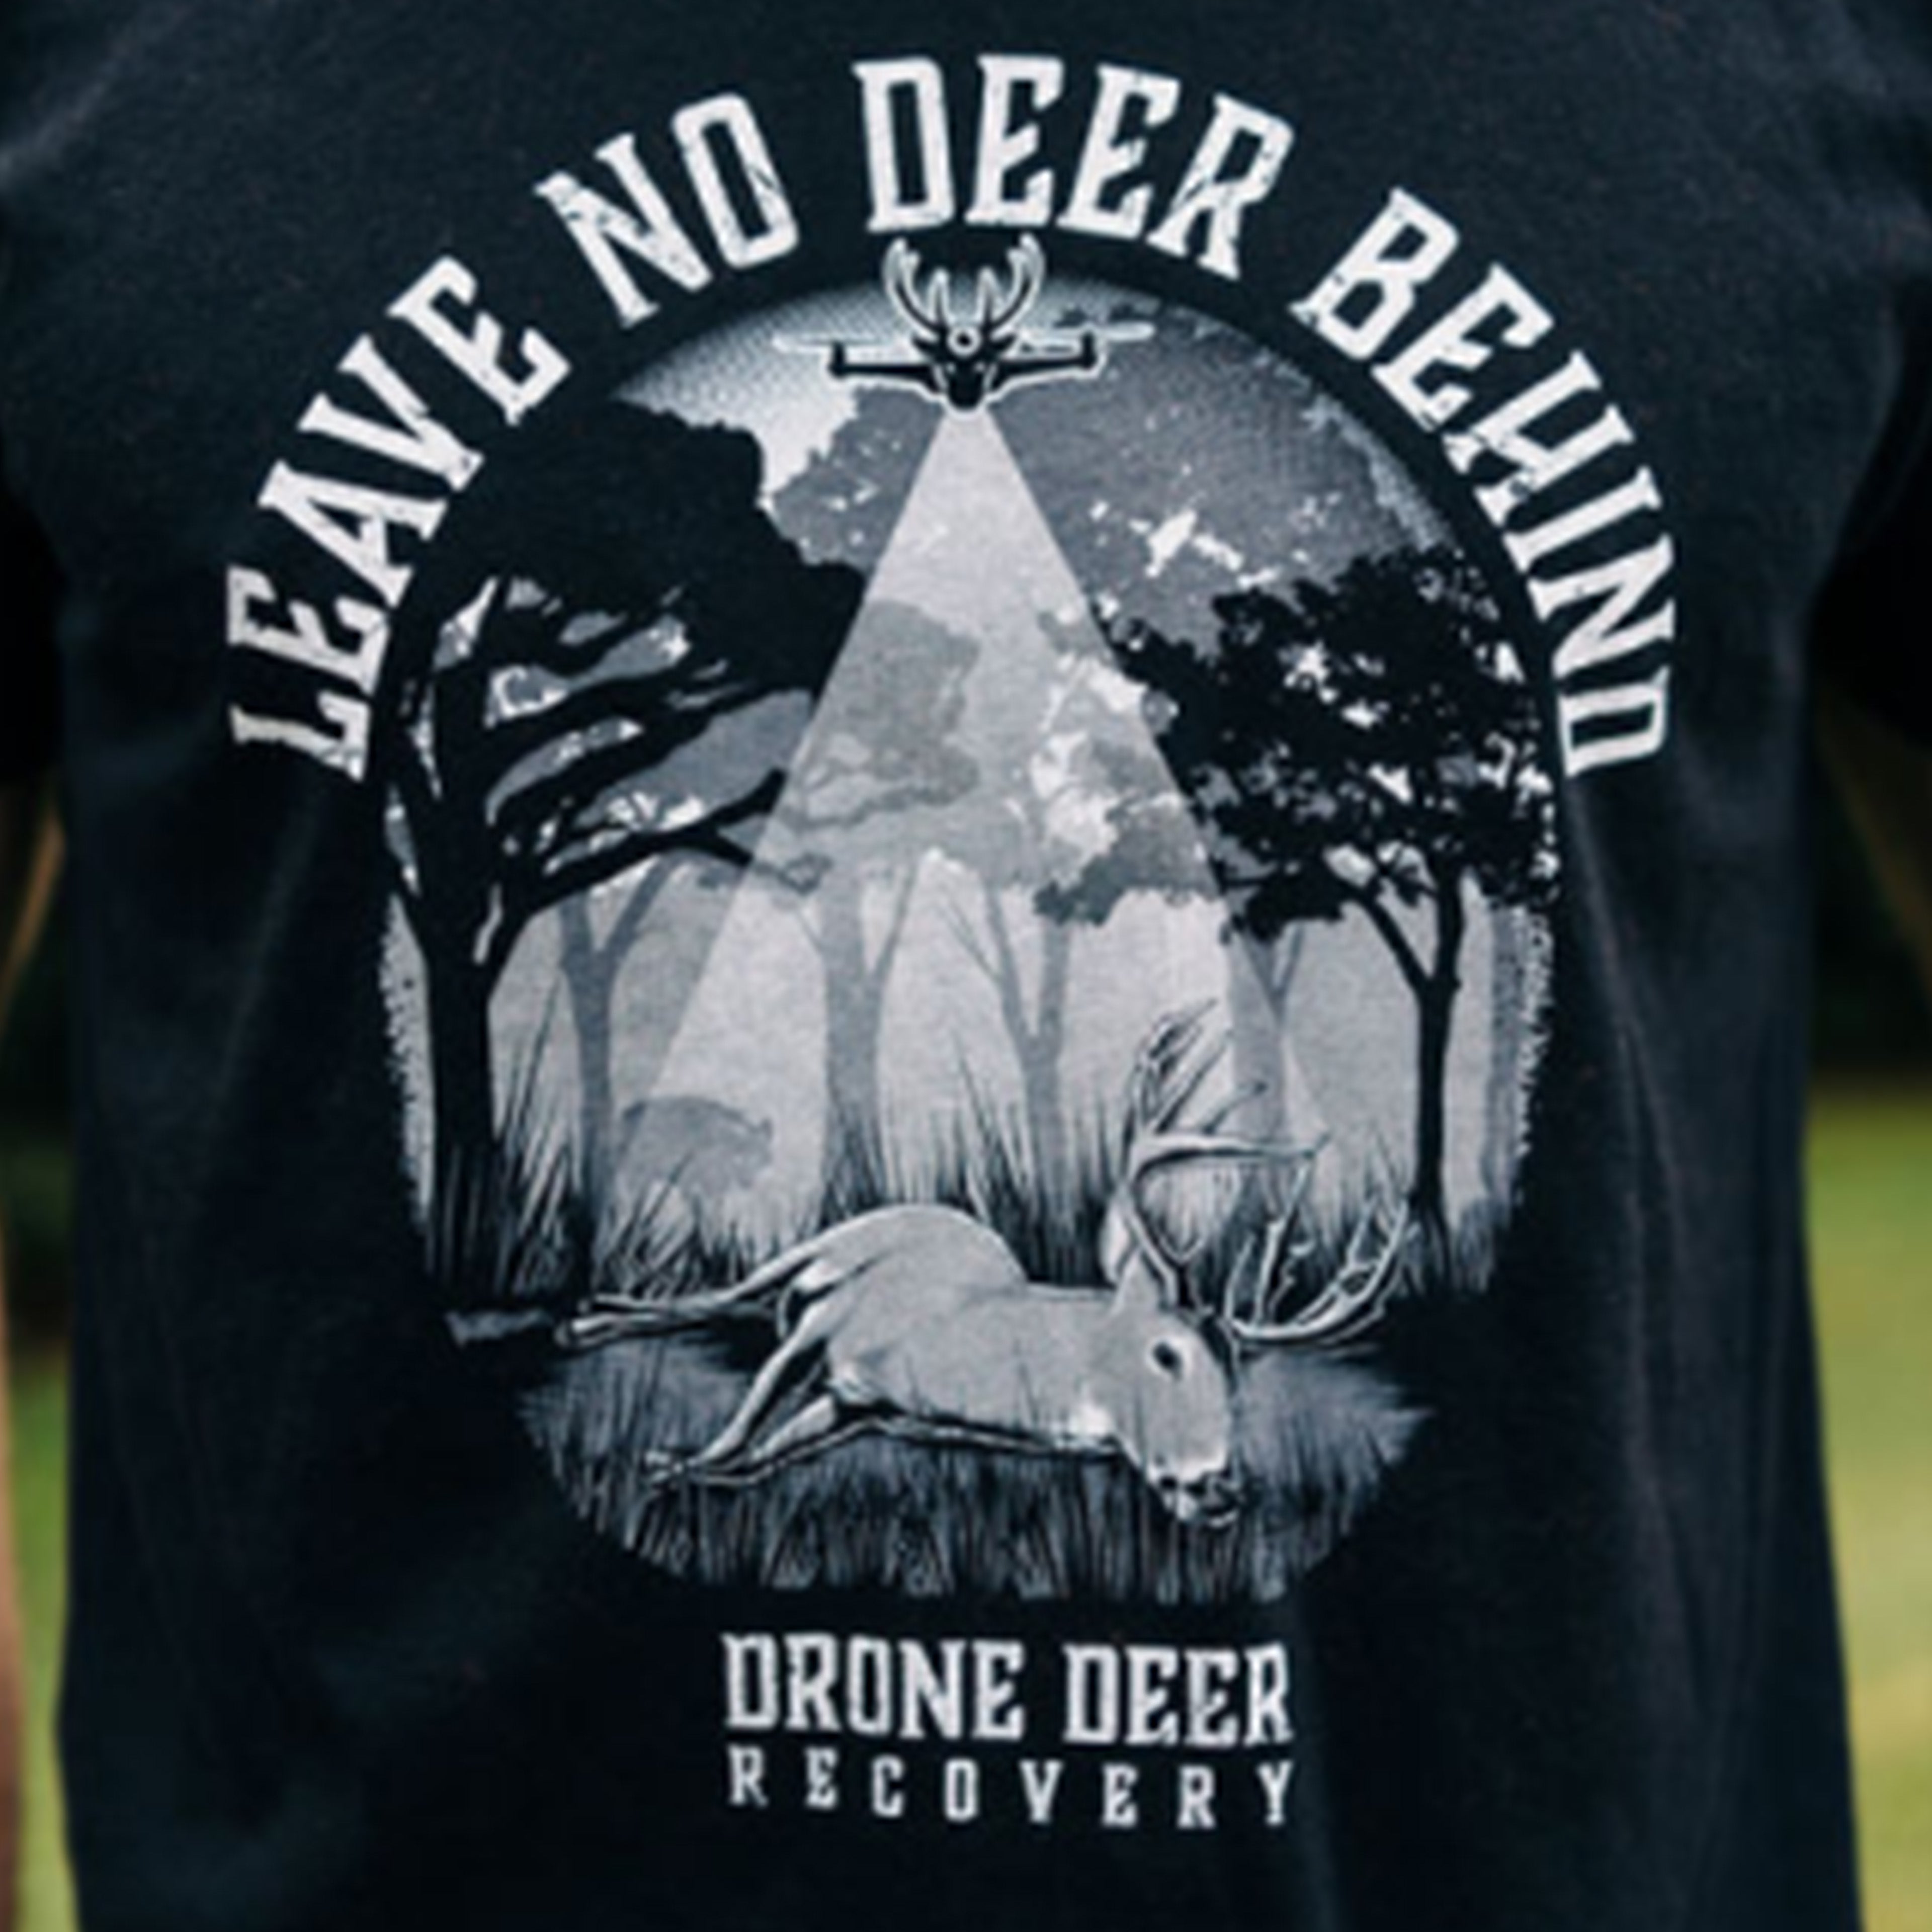 Leave No Deer Behind T-Shirt